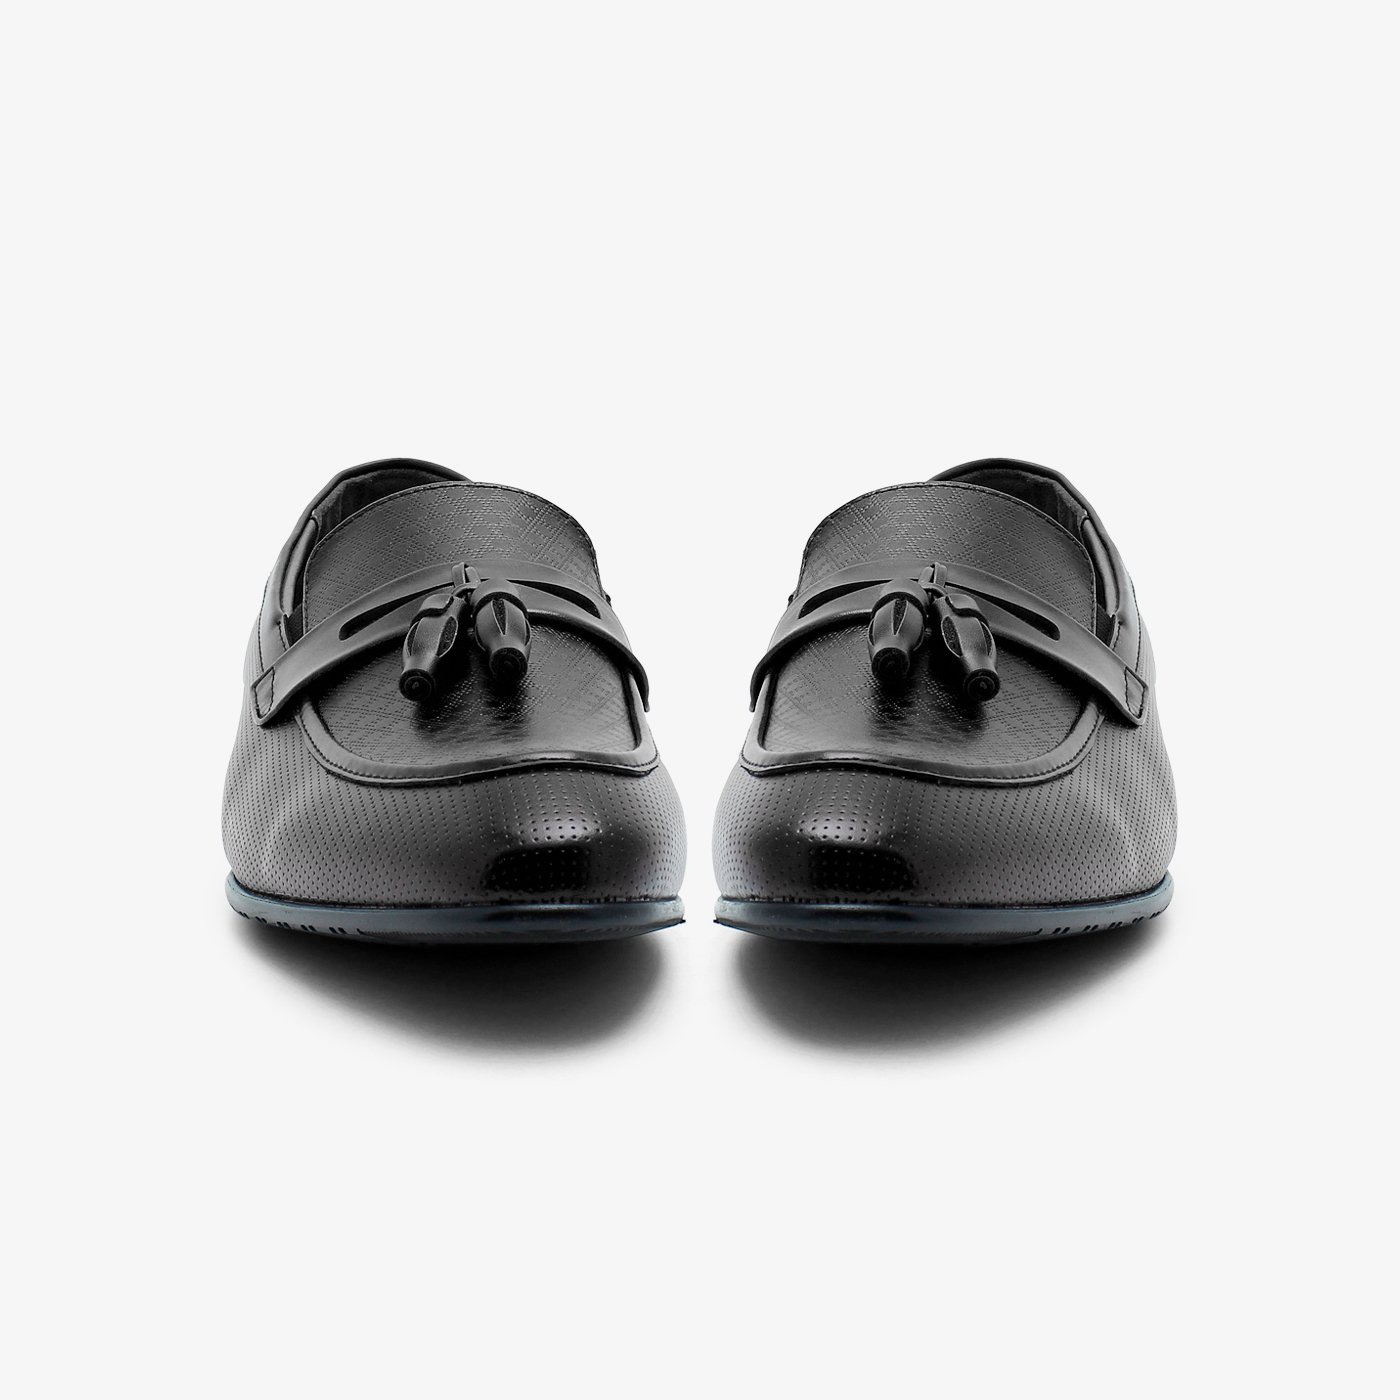 Tasseled Men Formal Shoes